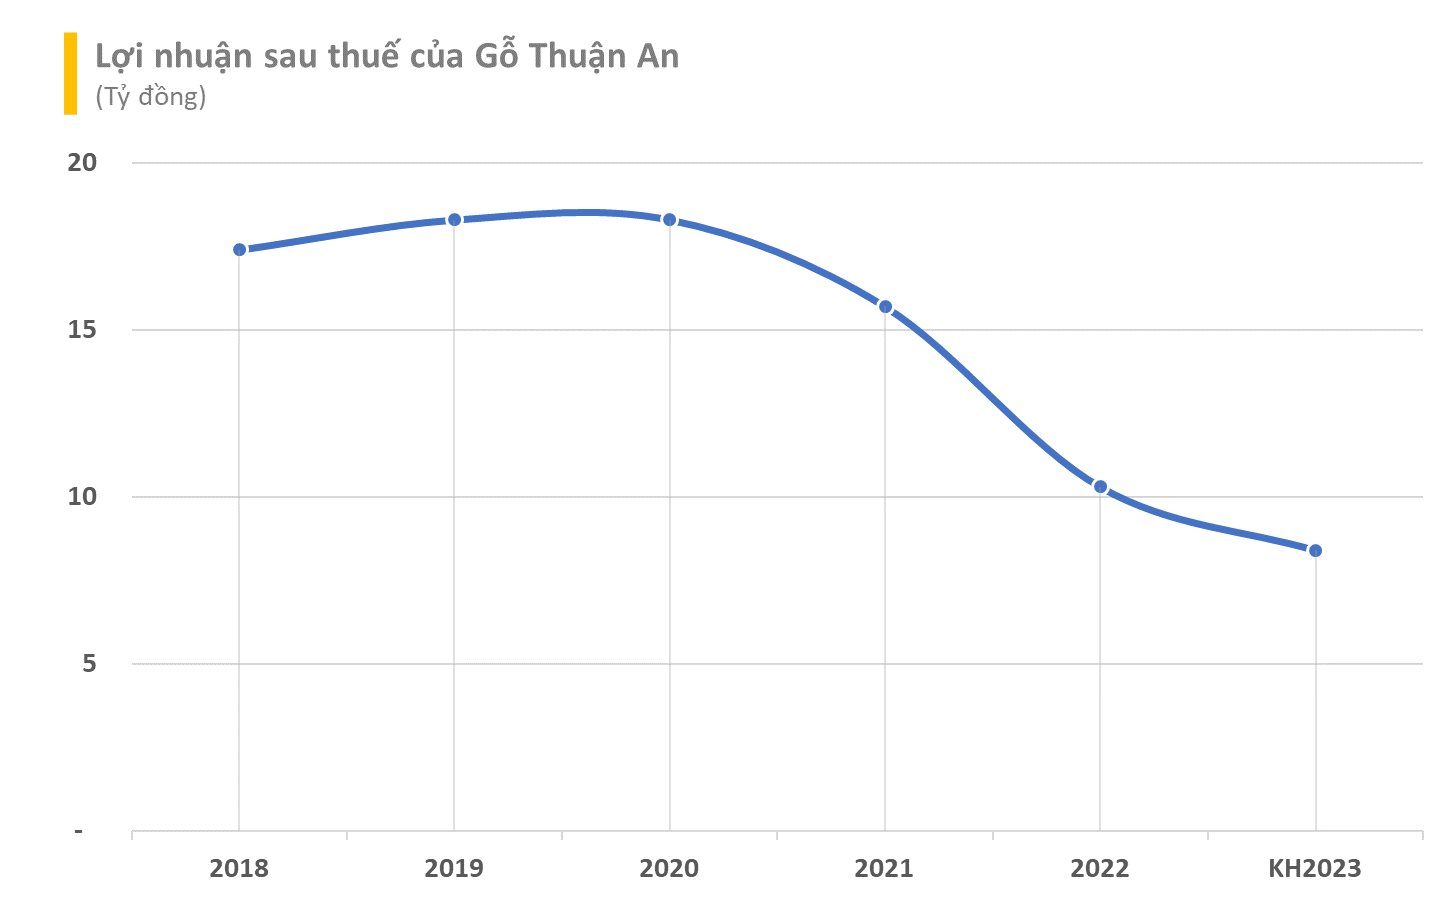 Xuất khẩu gặp khó, loạt tên tuổi lớn Vĩnh Hoàn, May Thành Công, Phú Tài,...đồng loạt đặt kế hoạch kinh doanh 2023 giảm sâu - Ảnh 6.